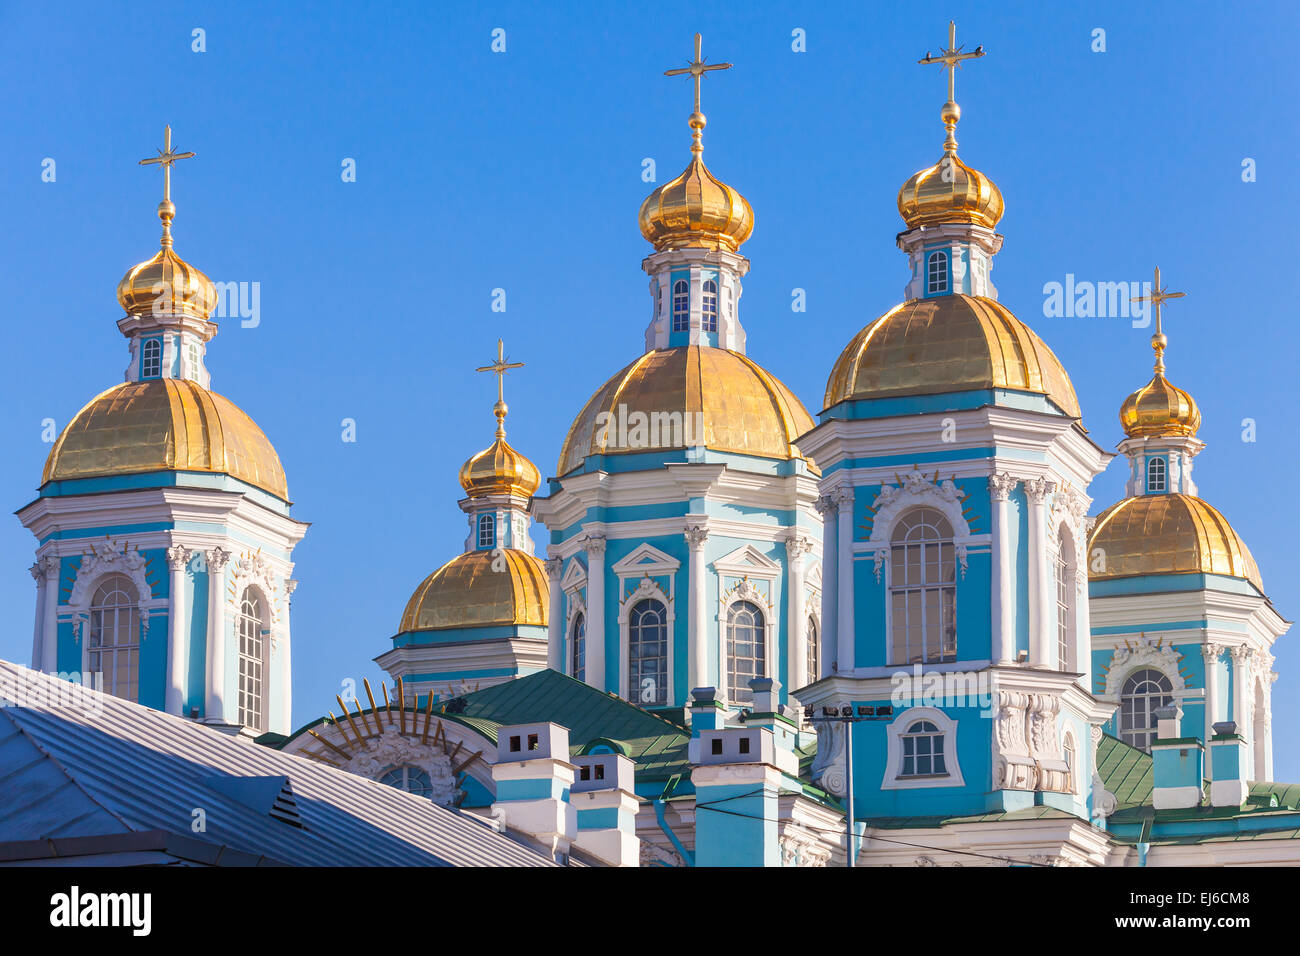 Chiesa ortodossa di San Nicola Cattedrale navale, facciata frammento con cupole dorate, San Pietroburgo, Russia Foto Stock